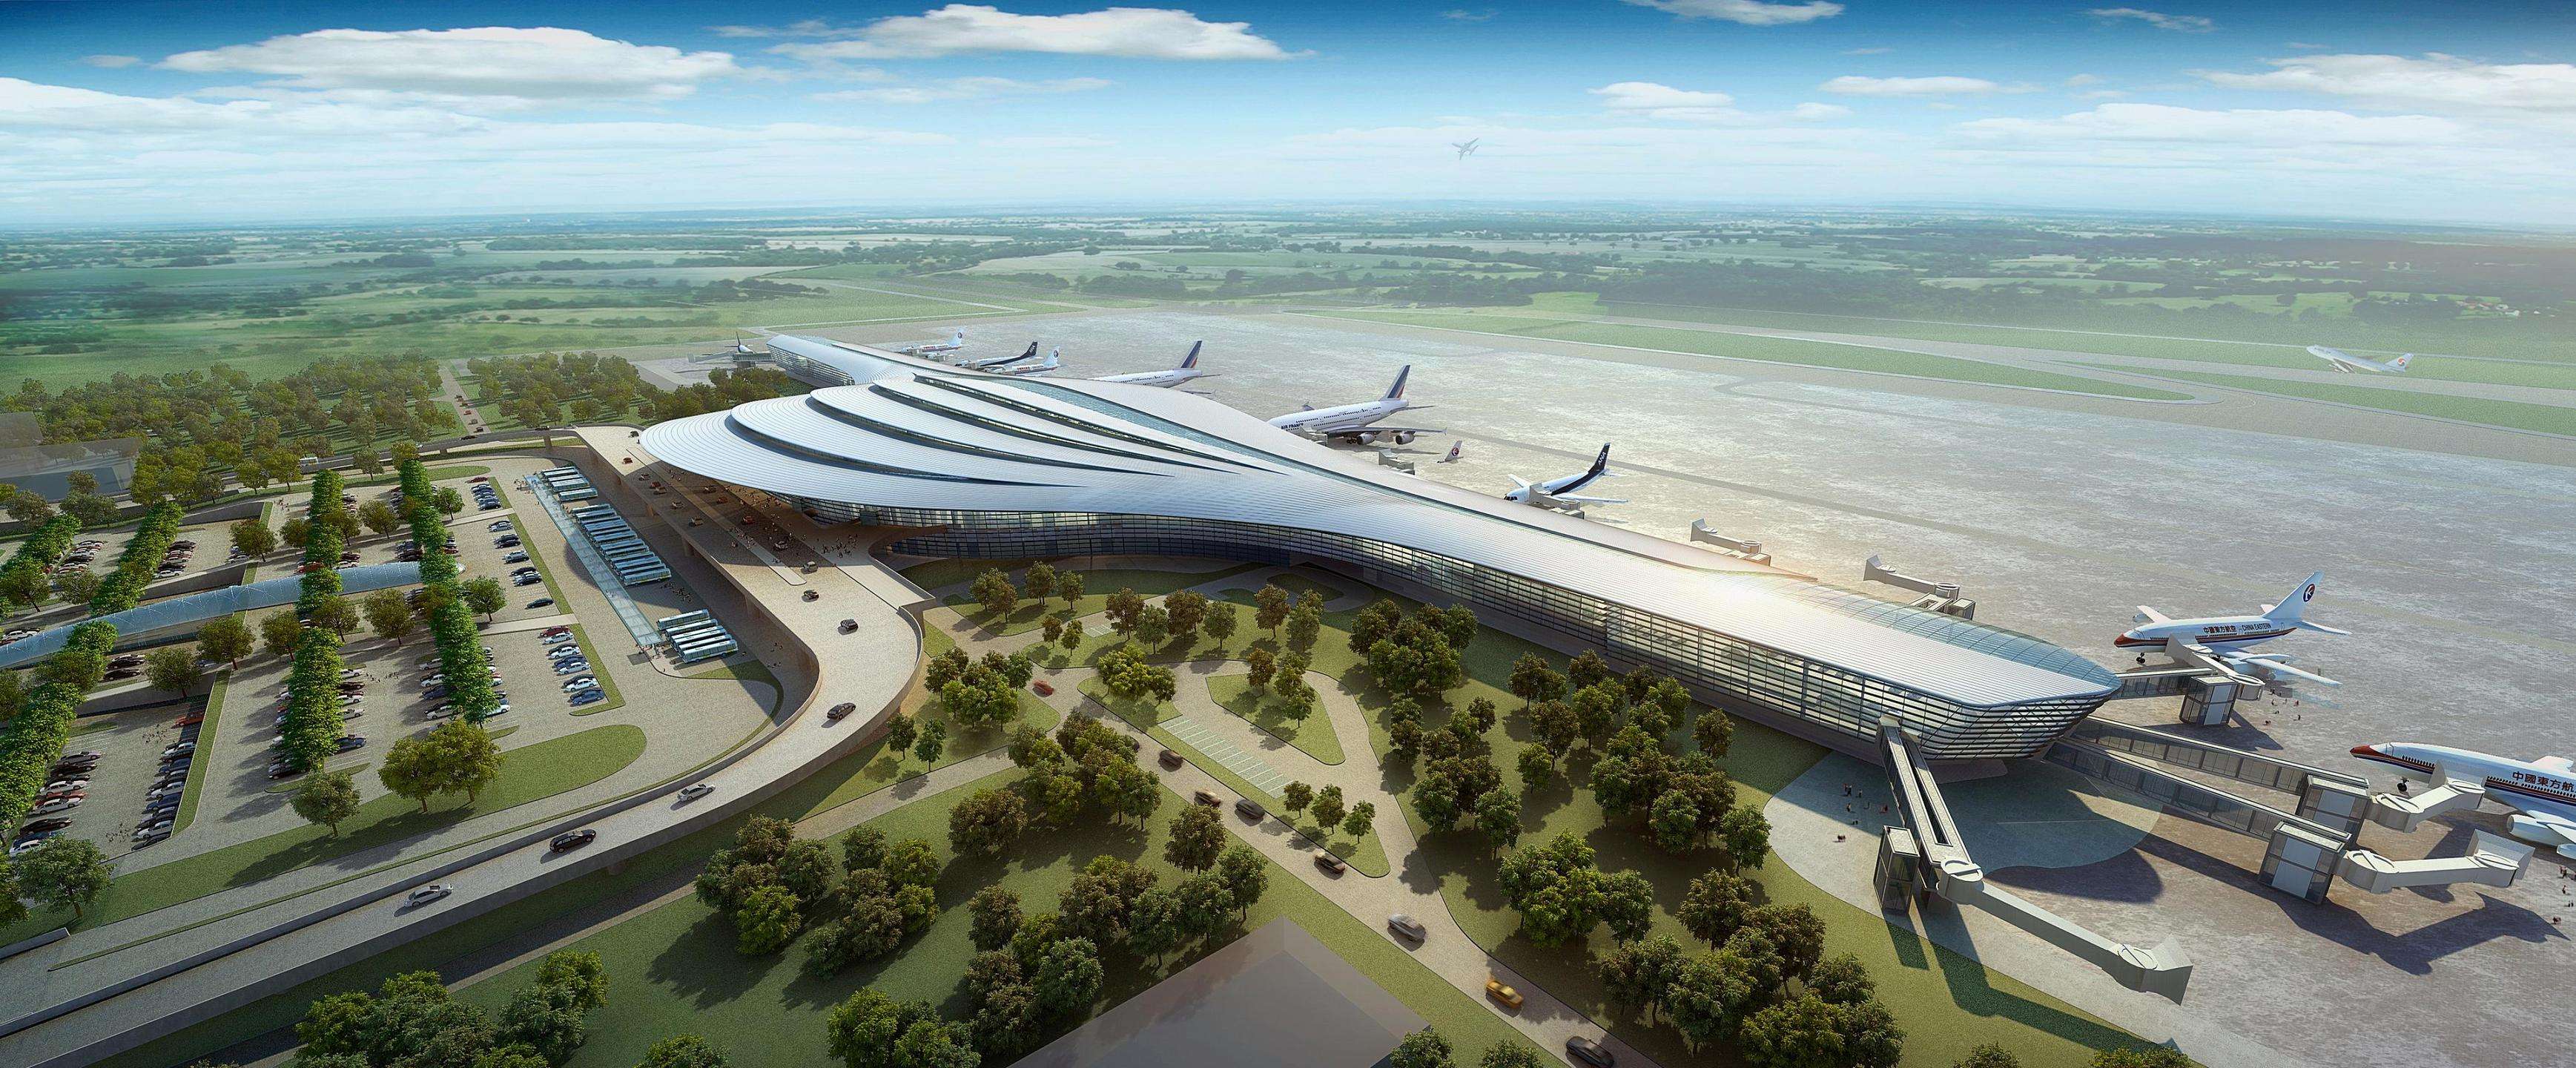 烟台蓬莱国际机场介绍|最新信息